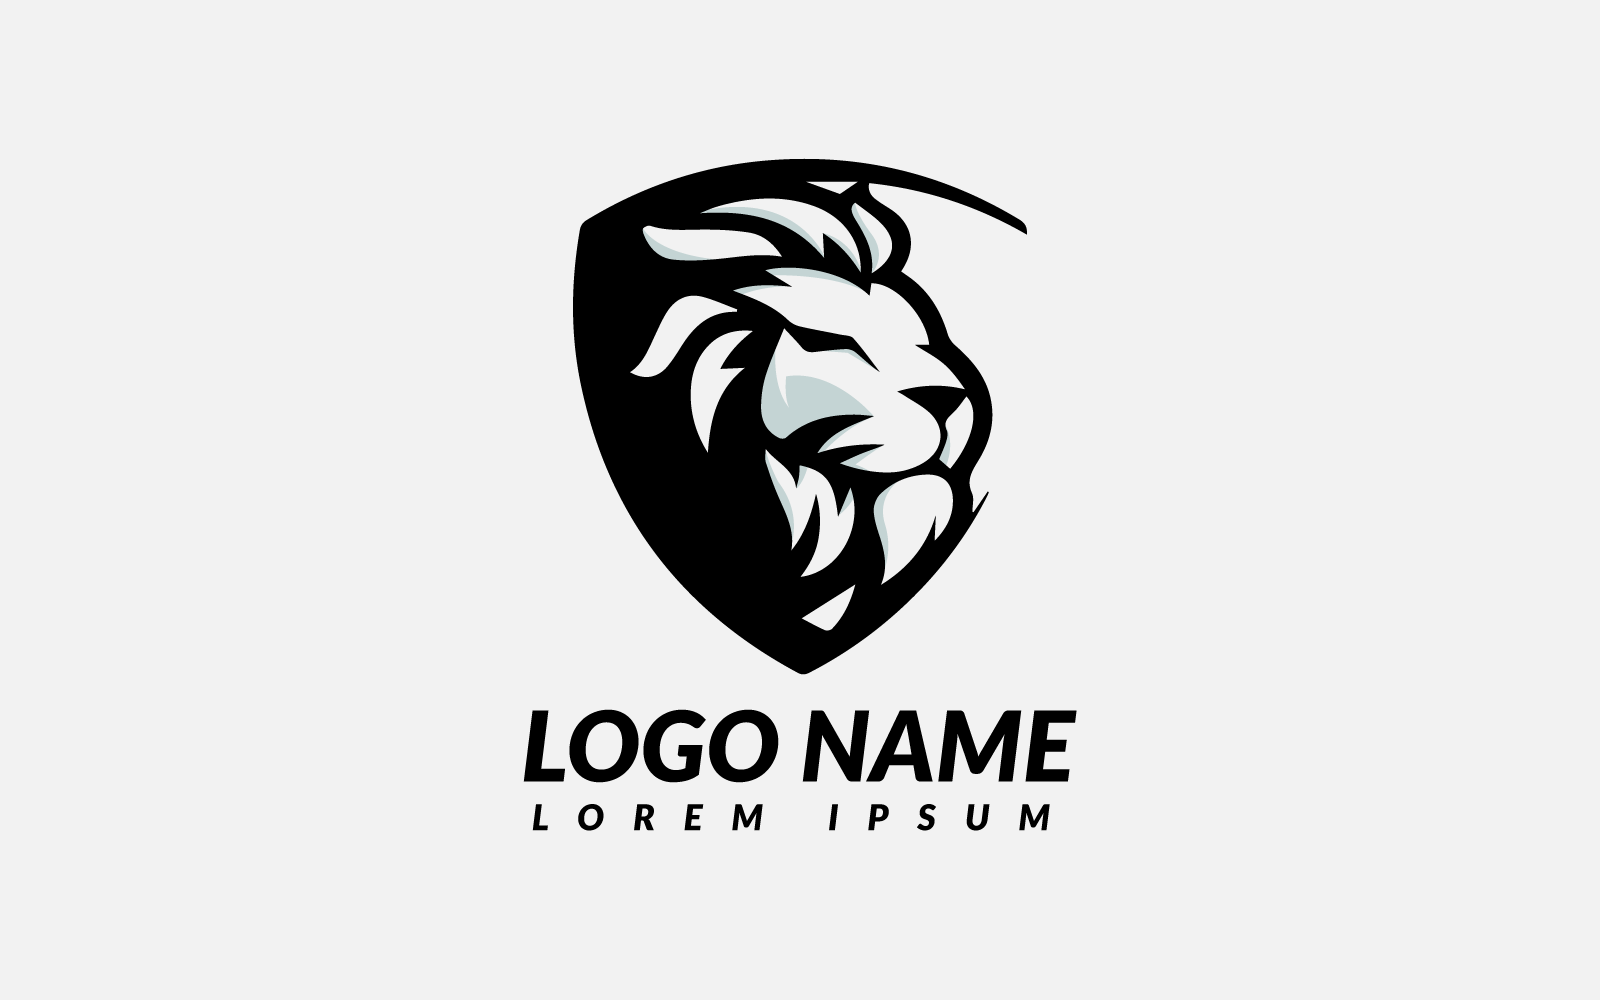 Уникальный и креативный логотип льва